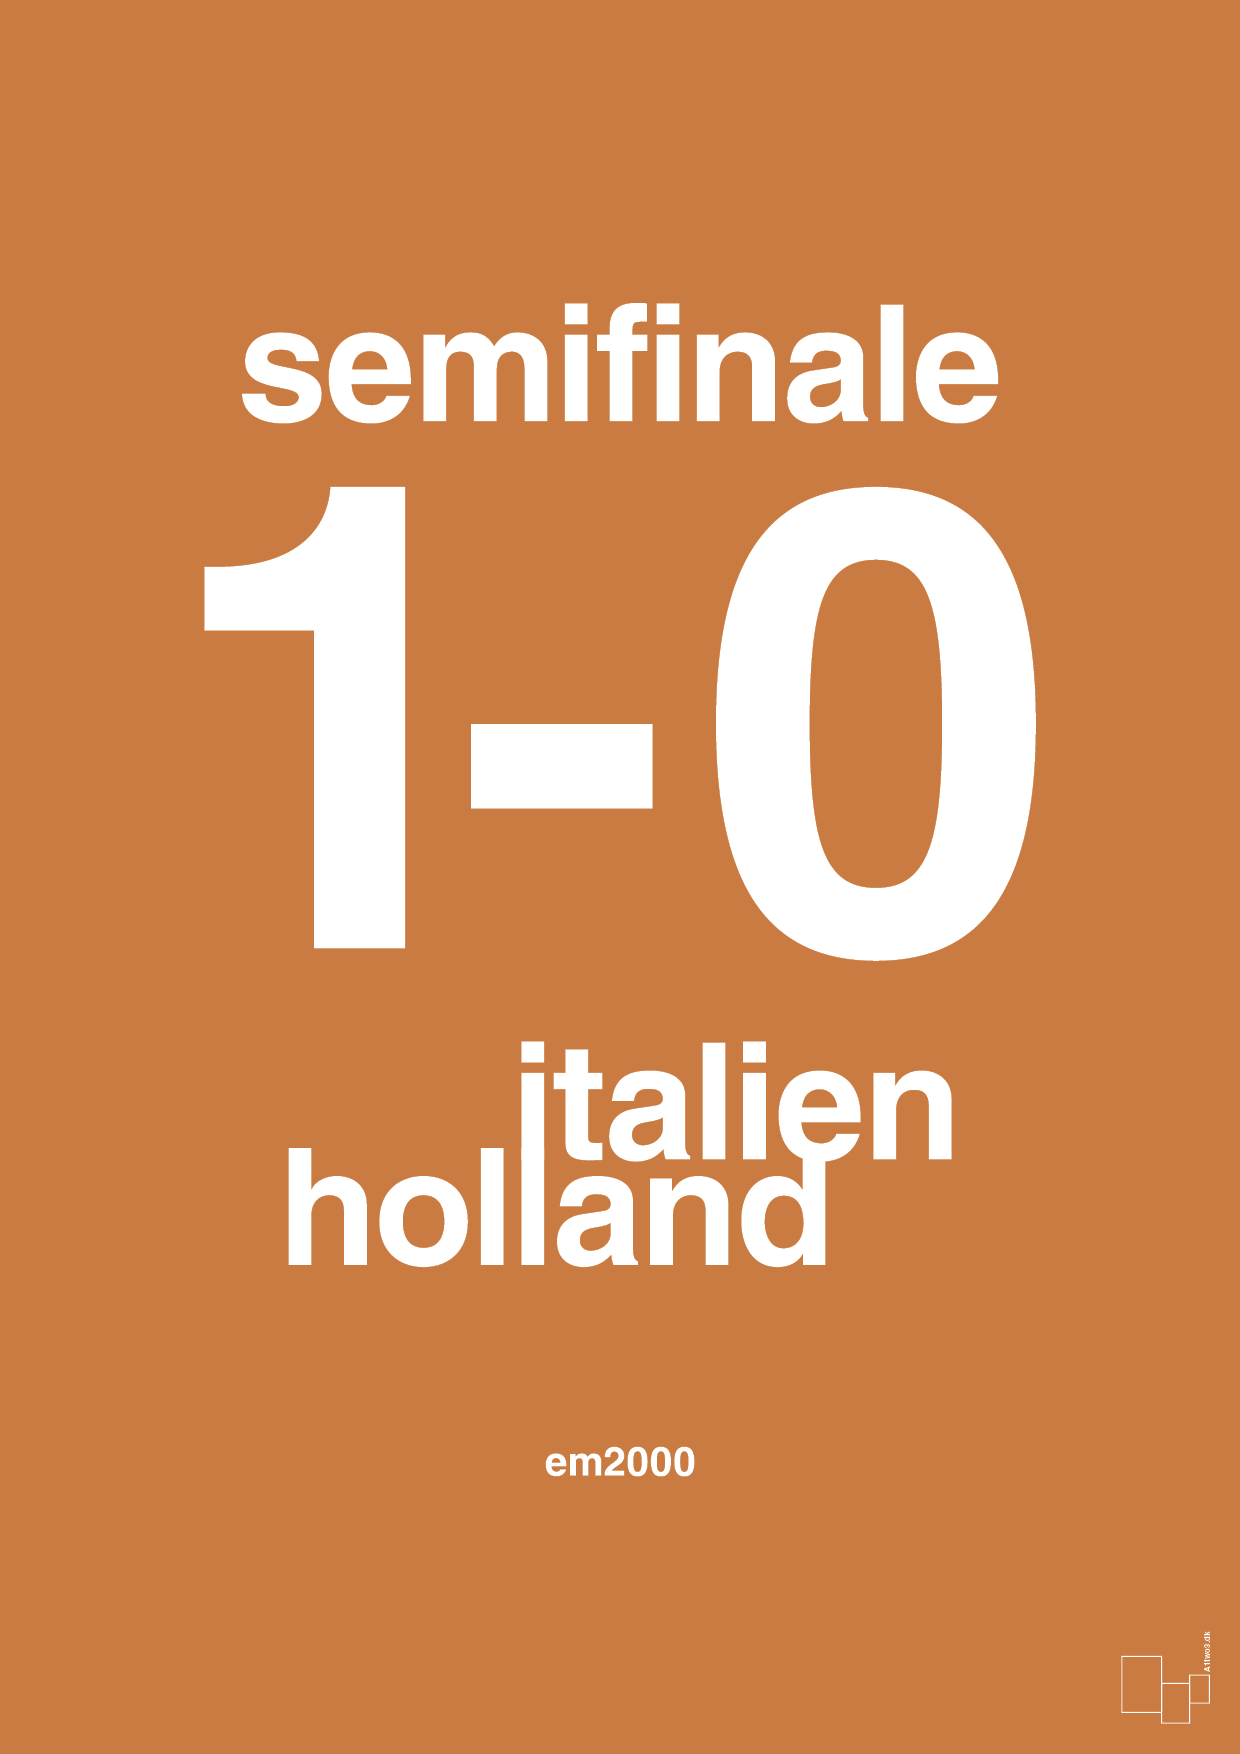 resultat for fodbold em semifinale A i 2000 - Plakat med Sport & Fritid i Rumba Orange